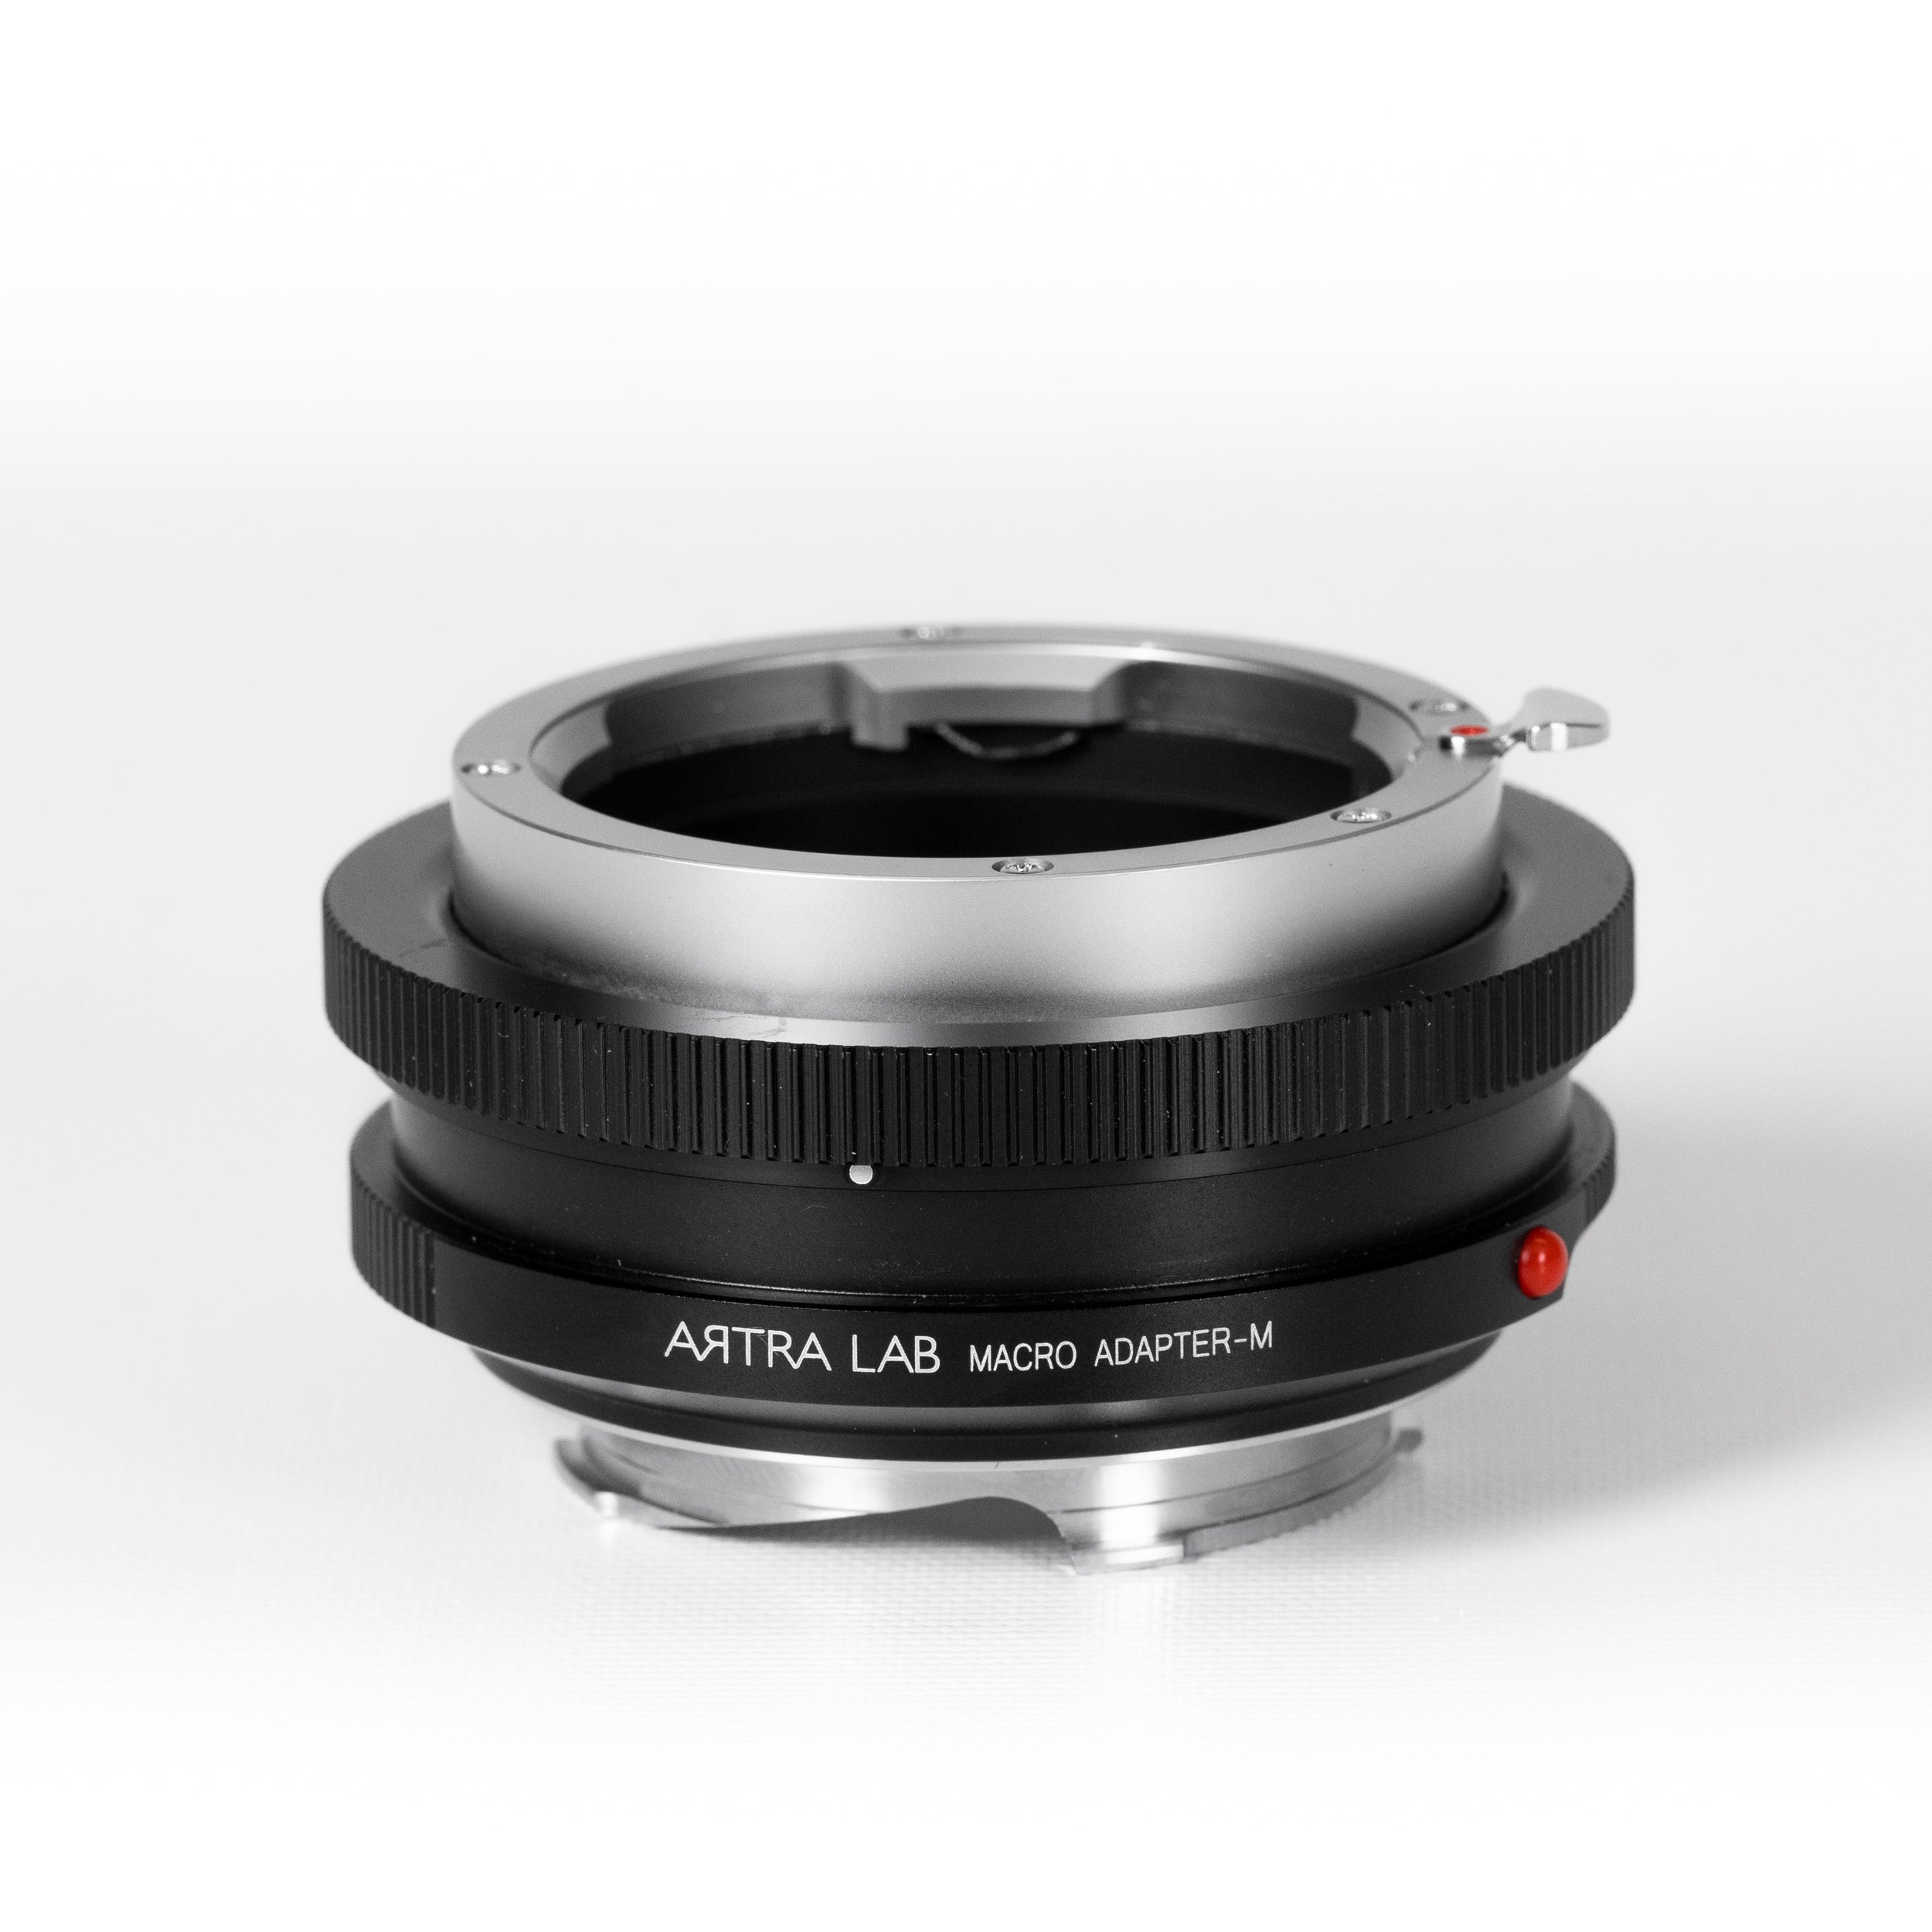 ARTRA LAB Leica M mount LM-LM Close focus Macro Adaptor M for Leica Rangfinder Camera